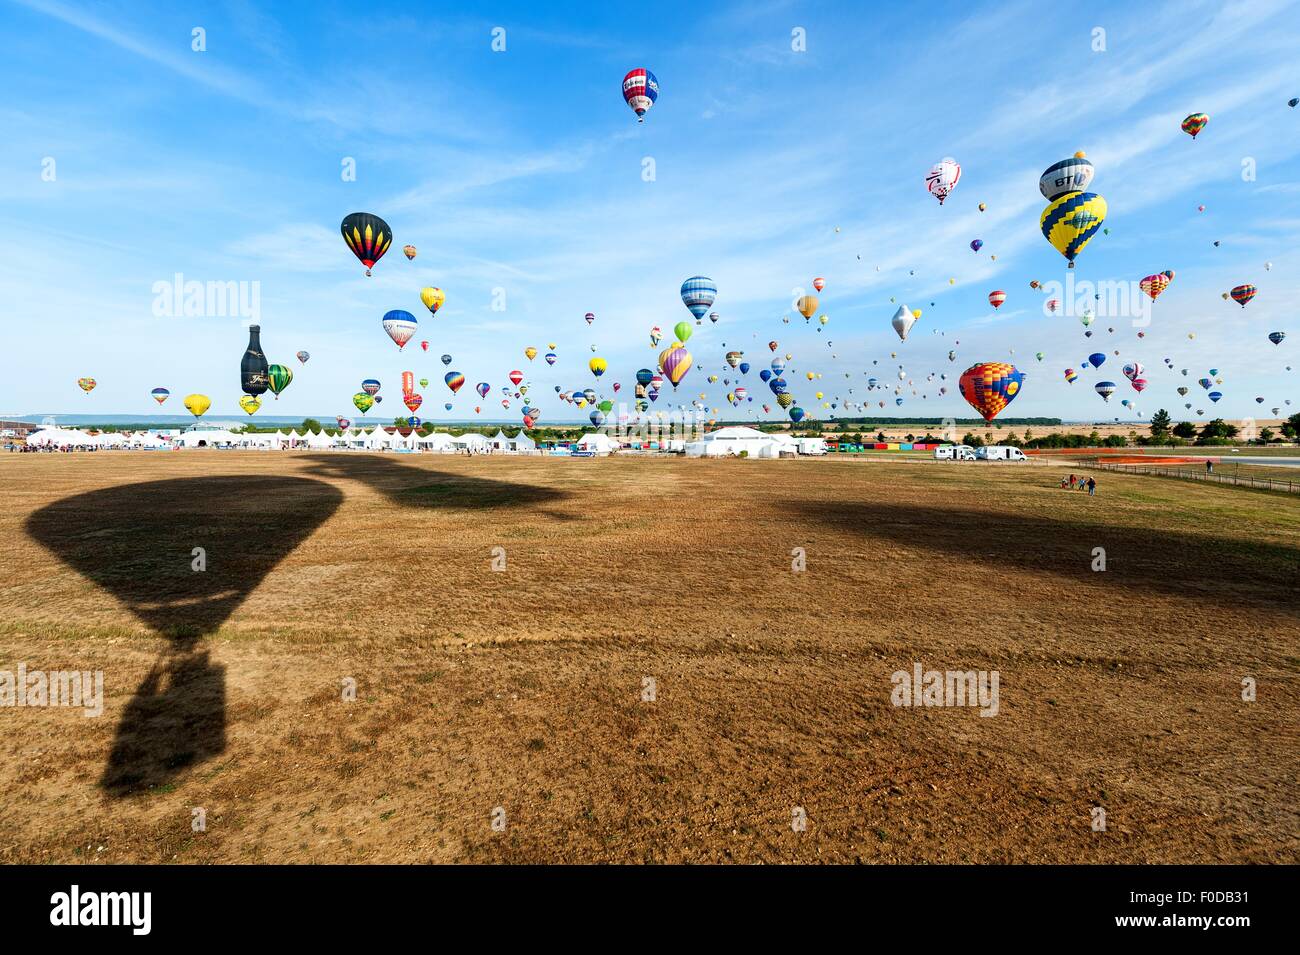 Plus de 400 ballons à air chaud de plus de 40 pays à partir de la base aérienne de Chambley-Bussieres, le nord-est de la France, le 26 juillet 2015, au cours de la réunion internationale de montgolfières Lorraine Mondial Air Ballons. Banque D'Images